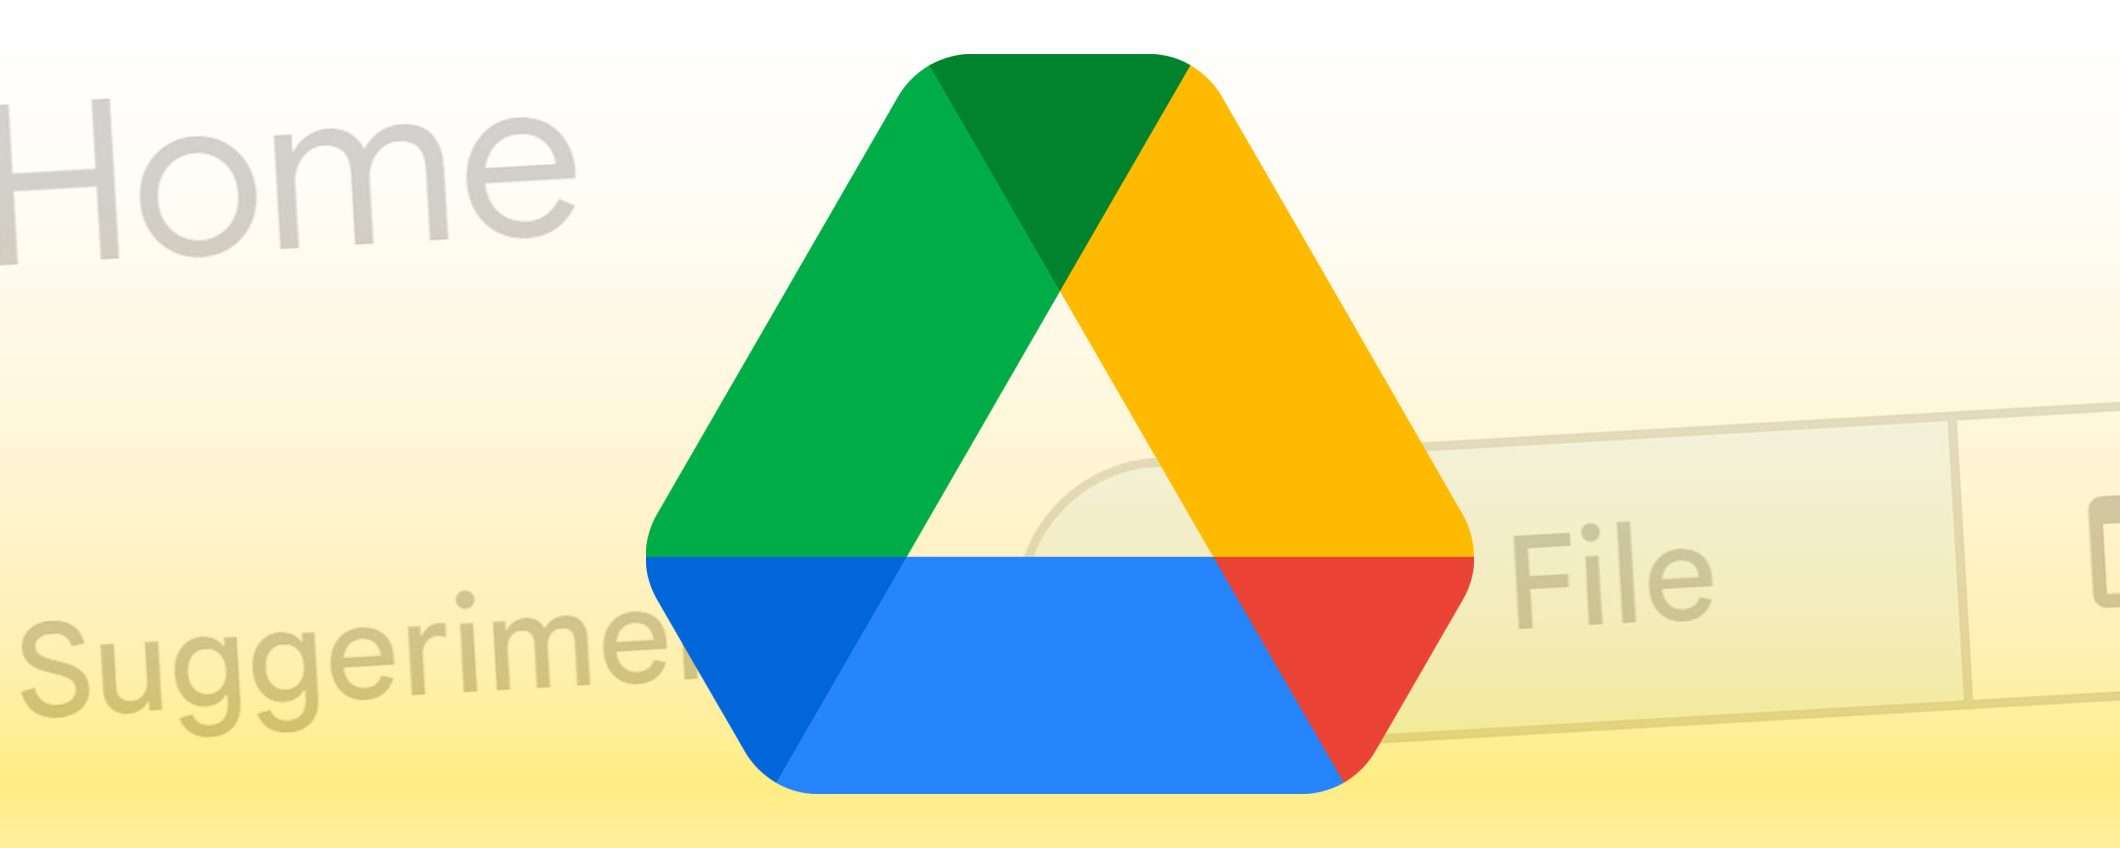 Google Drive ha una nuova homepage desktop: Home